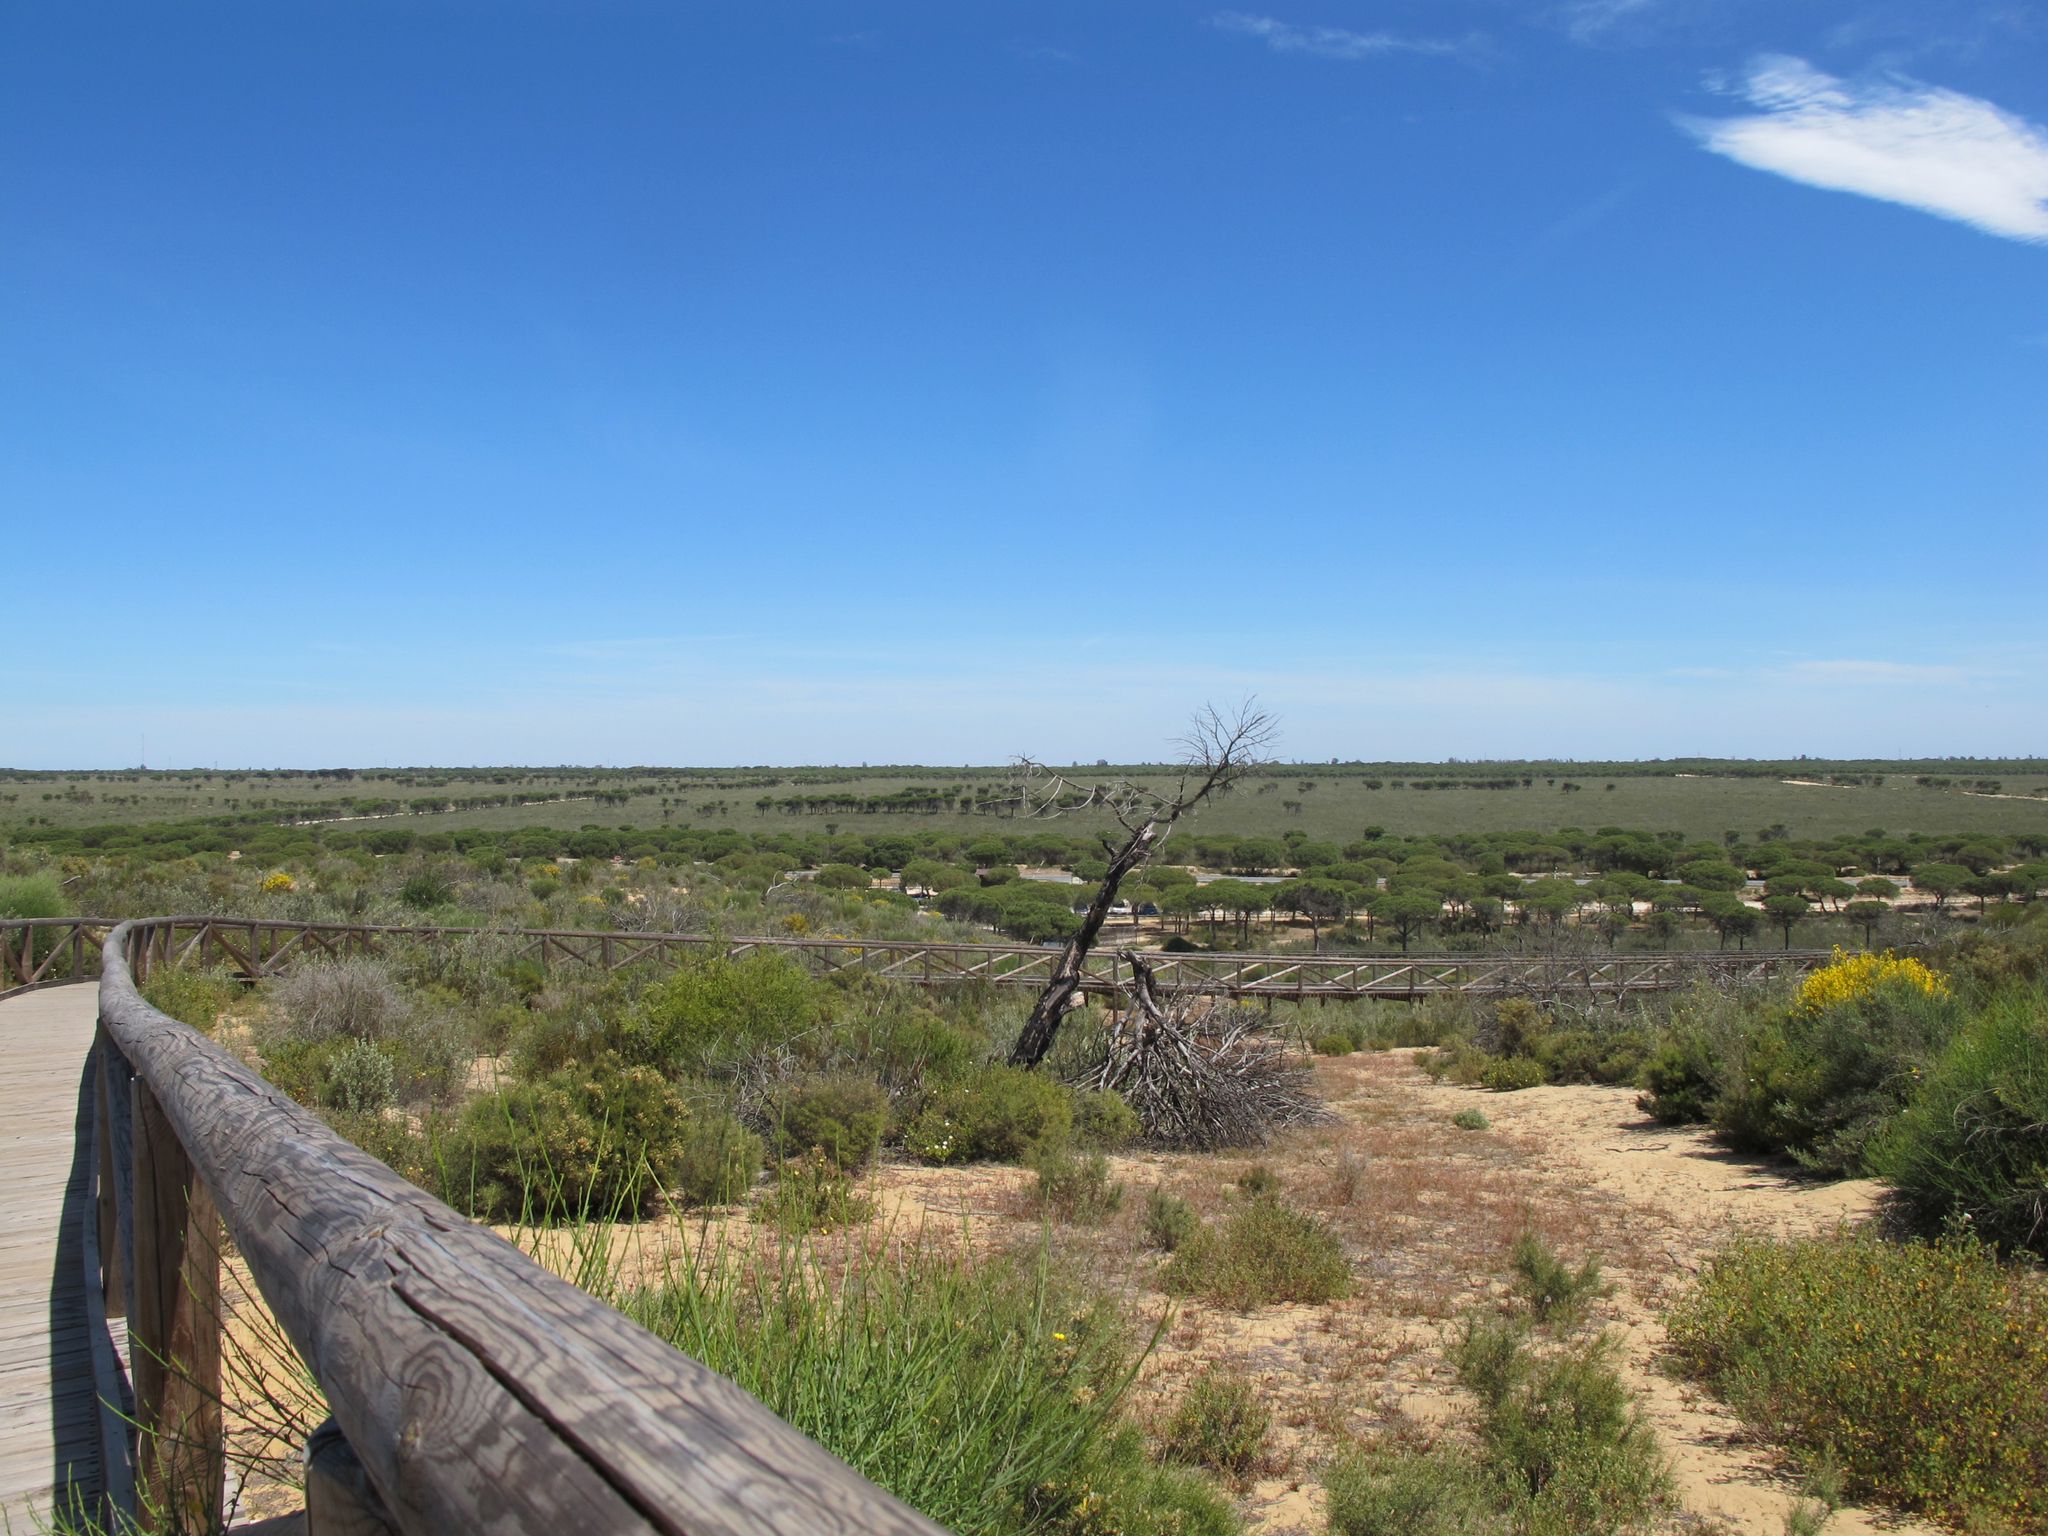 Der Nationalpark Doñana, der zum Meer hin von hohen Wanderdünen wie hier an der Cuesta Maneli begrenzt wird, ist durch eine Dürre bedroht.